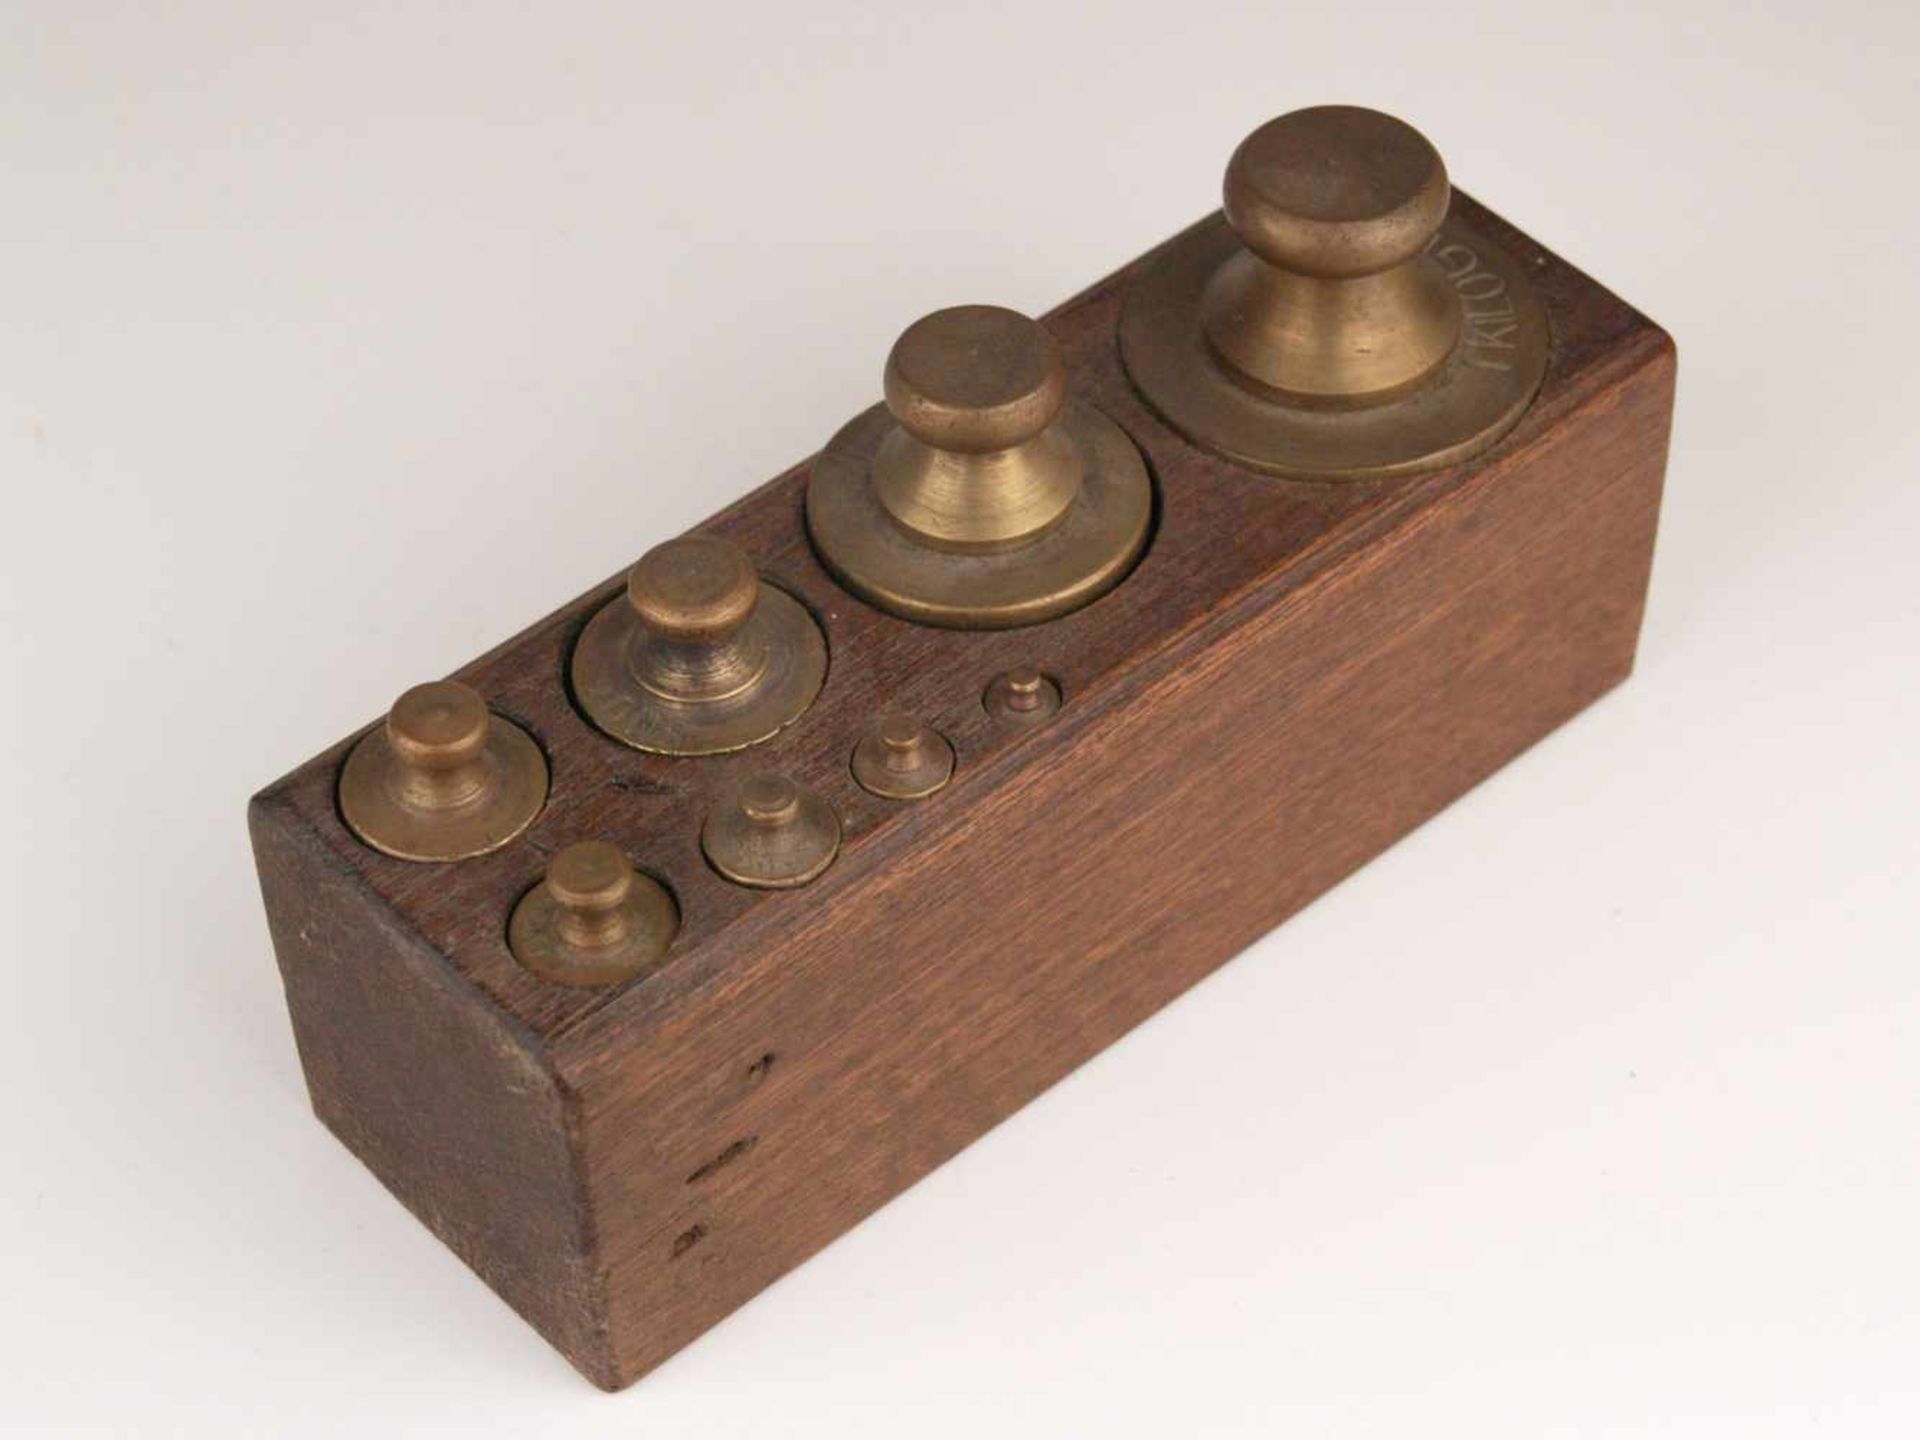 Acht Gewichte - Holzblock mit 8 Gewichten, Messing, von 5g bis 1 kg, zylindrischer Korpus mit Knauf, - Bild 2 aus 3